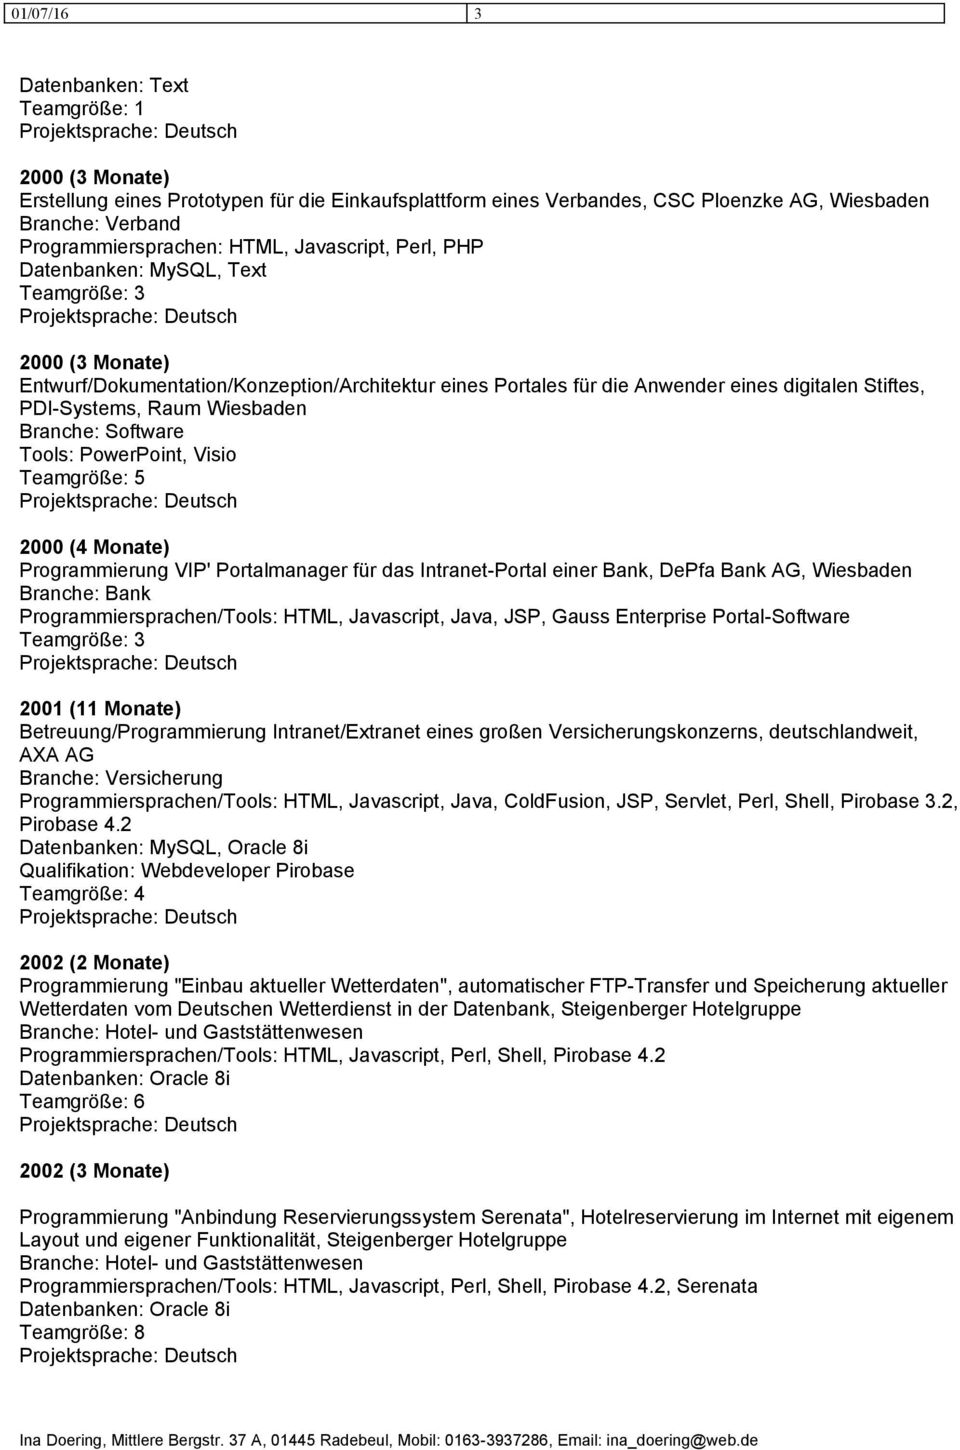 Visio 2000 (4 Monate) Programmierung VIP' Portalmanager für das Intranet-Portal einer Bank, DePfa Bank AG, Wiesbaden Branche: Bank Programmiersprachen/Tools: HTML, Javascript, Java, JSP, Gauss